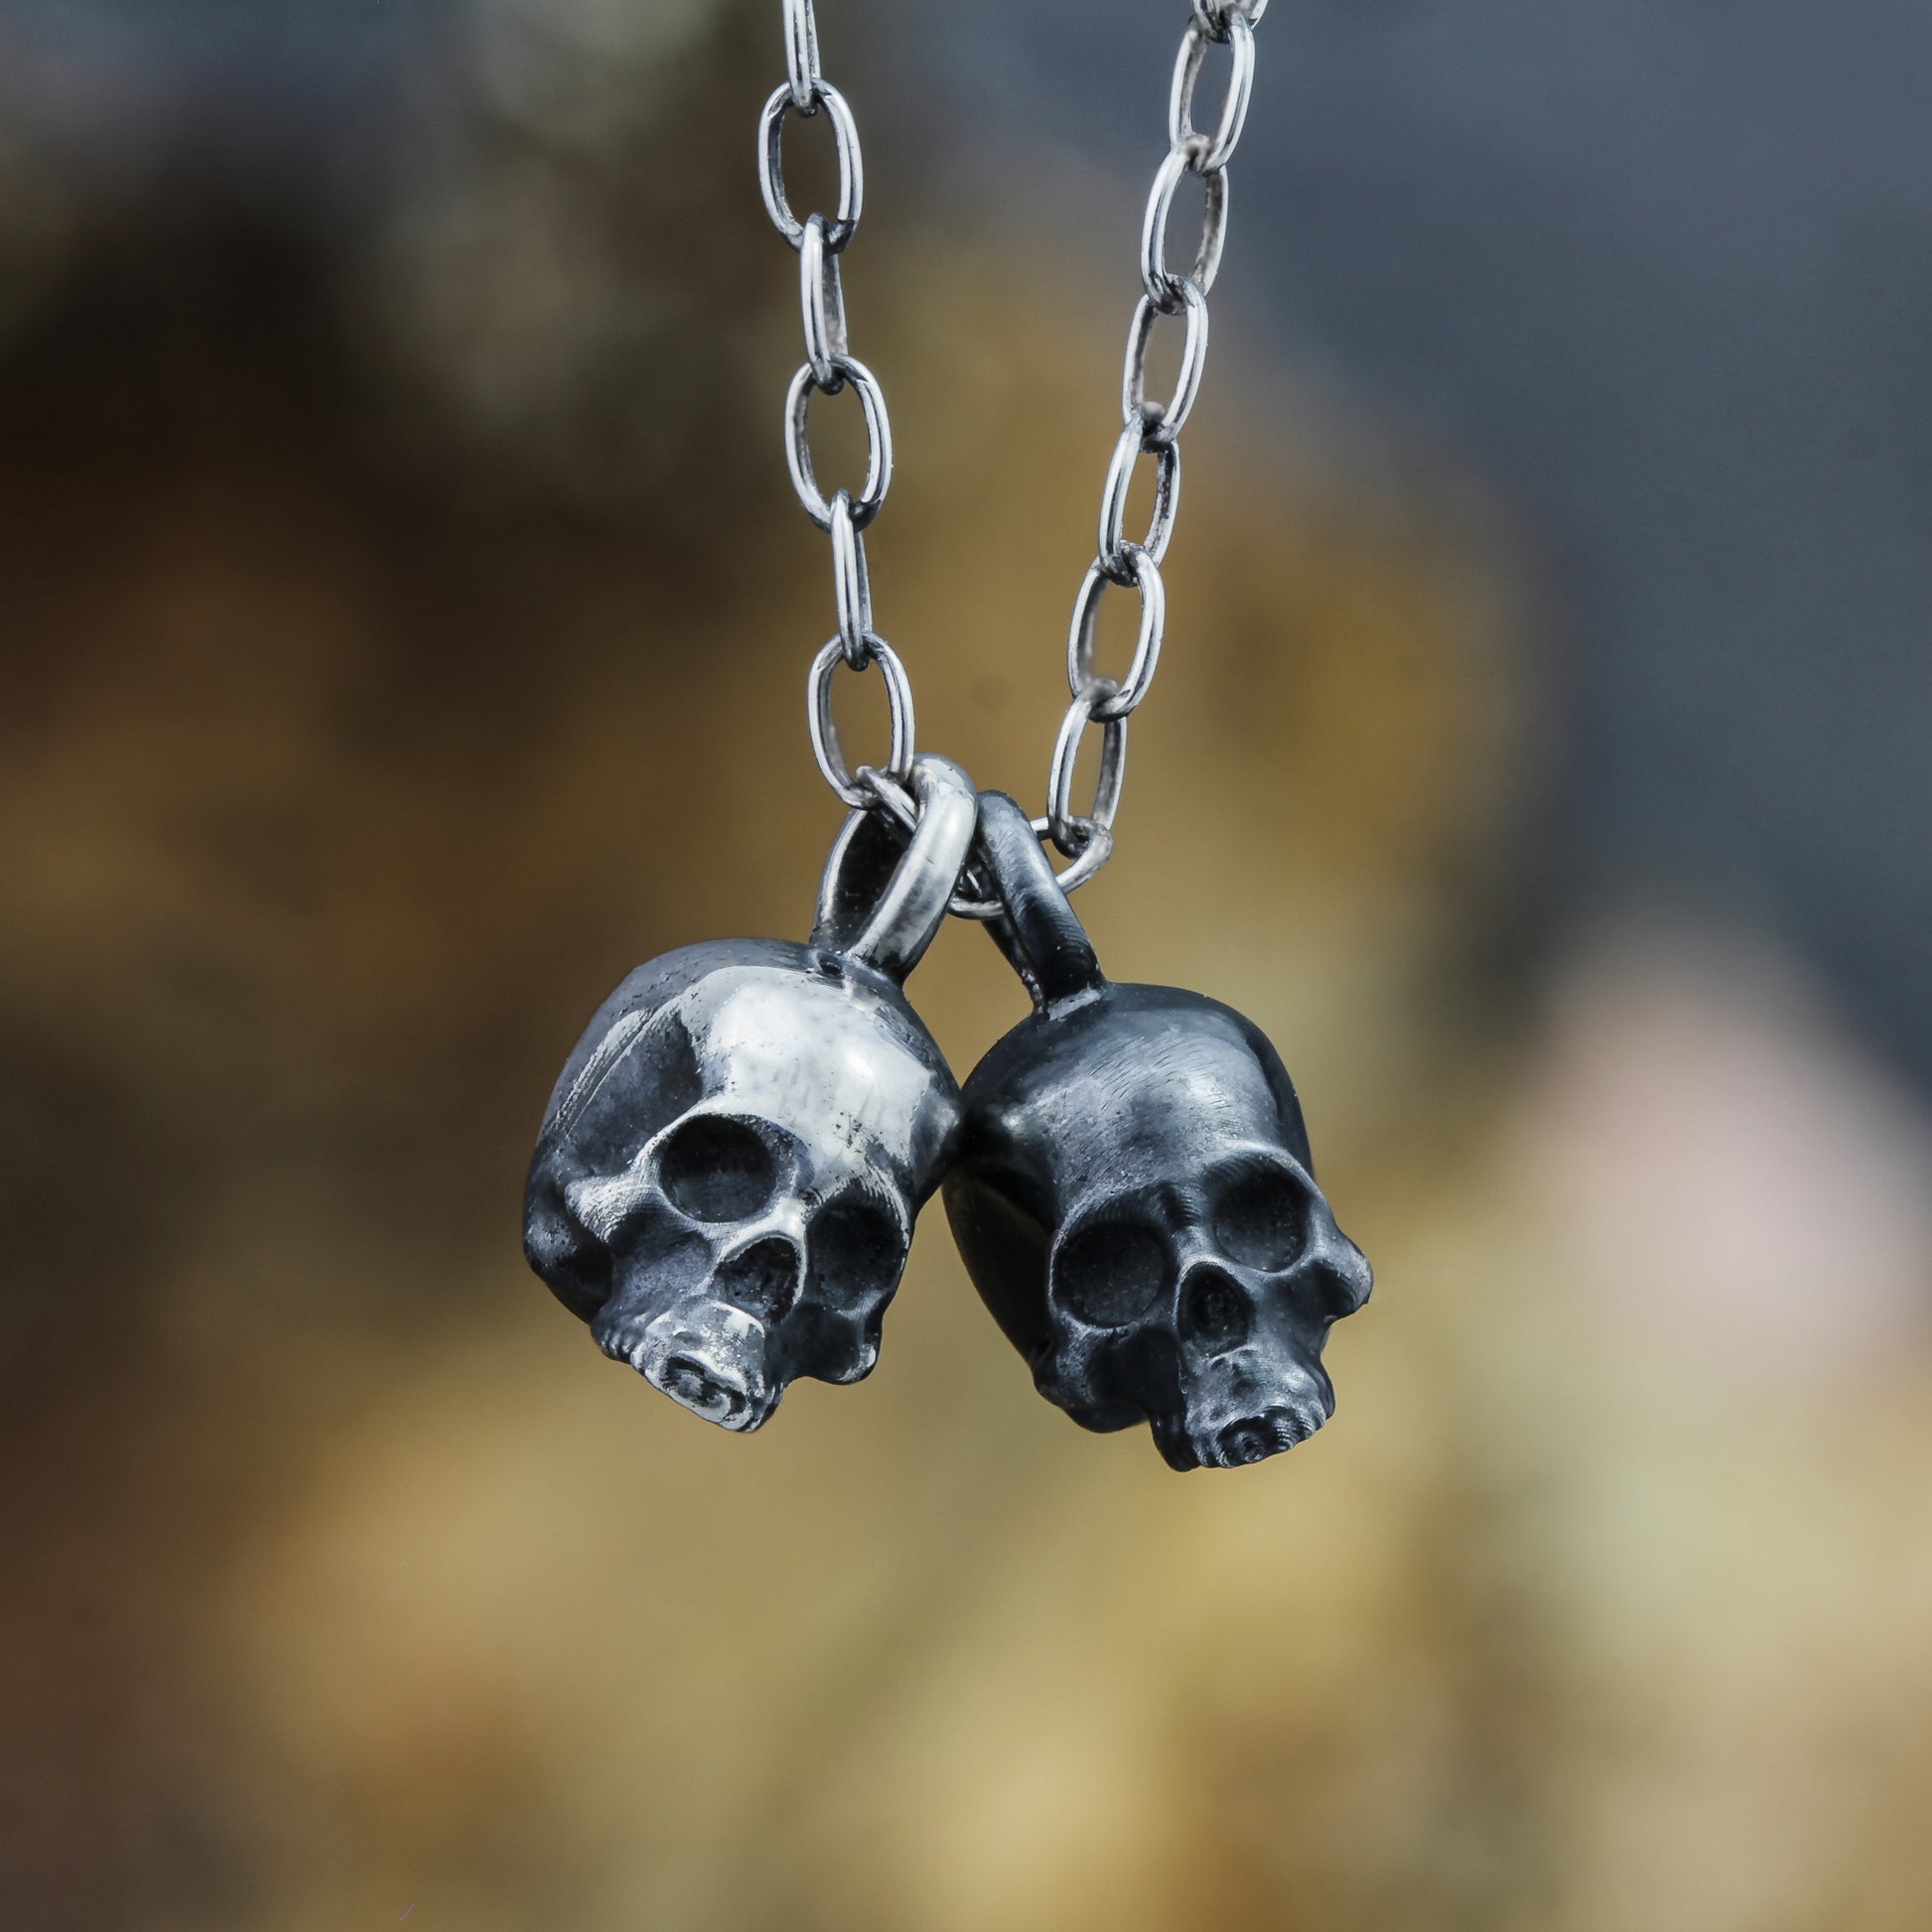 Tiny skull necklace.